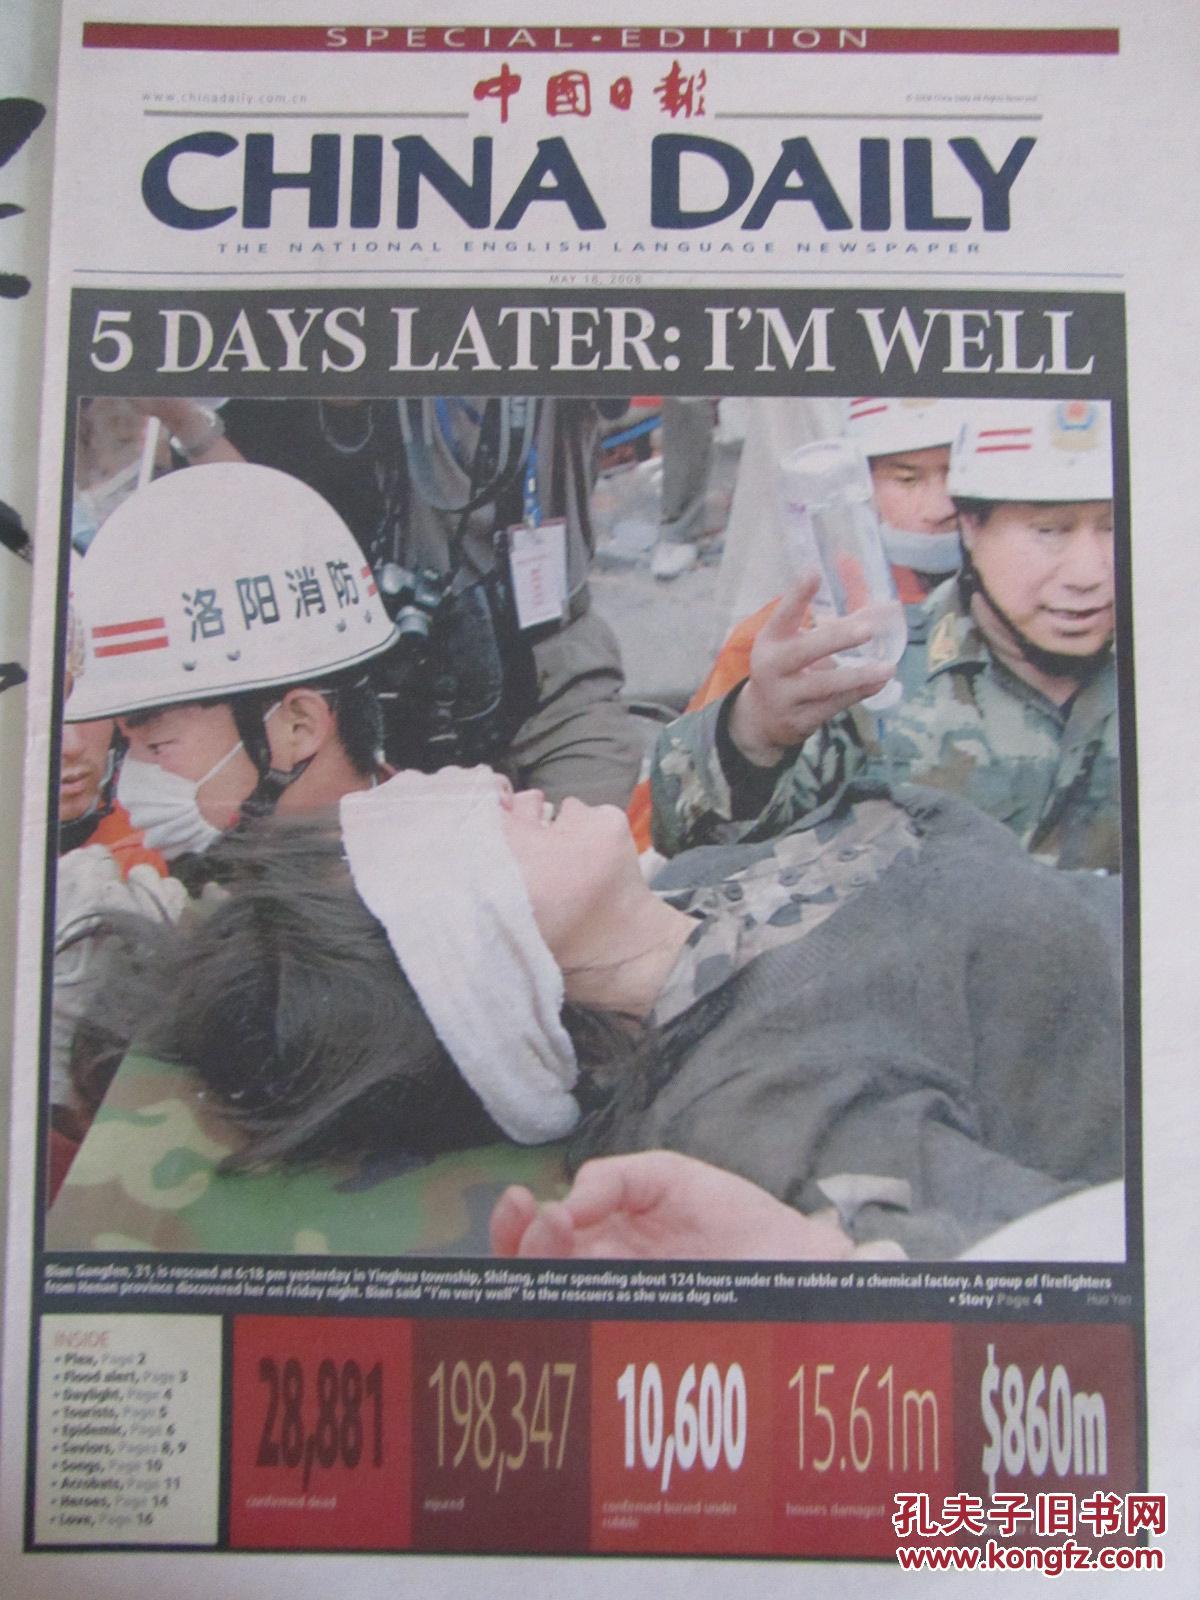 2008年5月18日中国日报英文版2008年5月18日生日报汶川地震特别报道